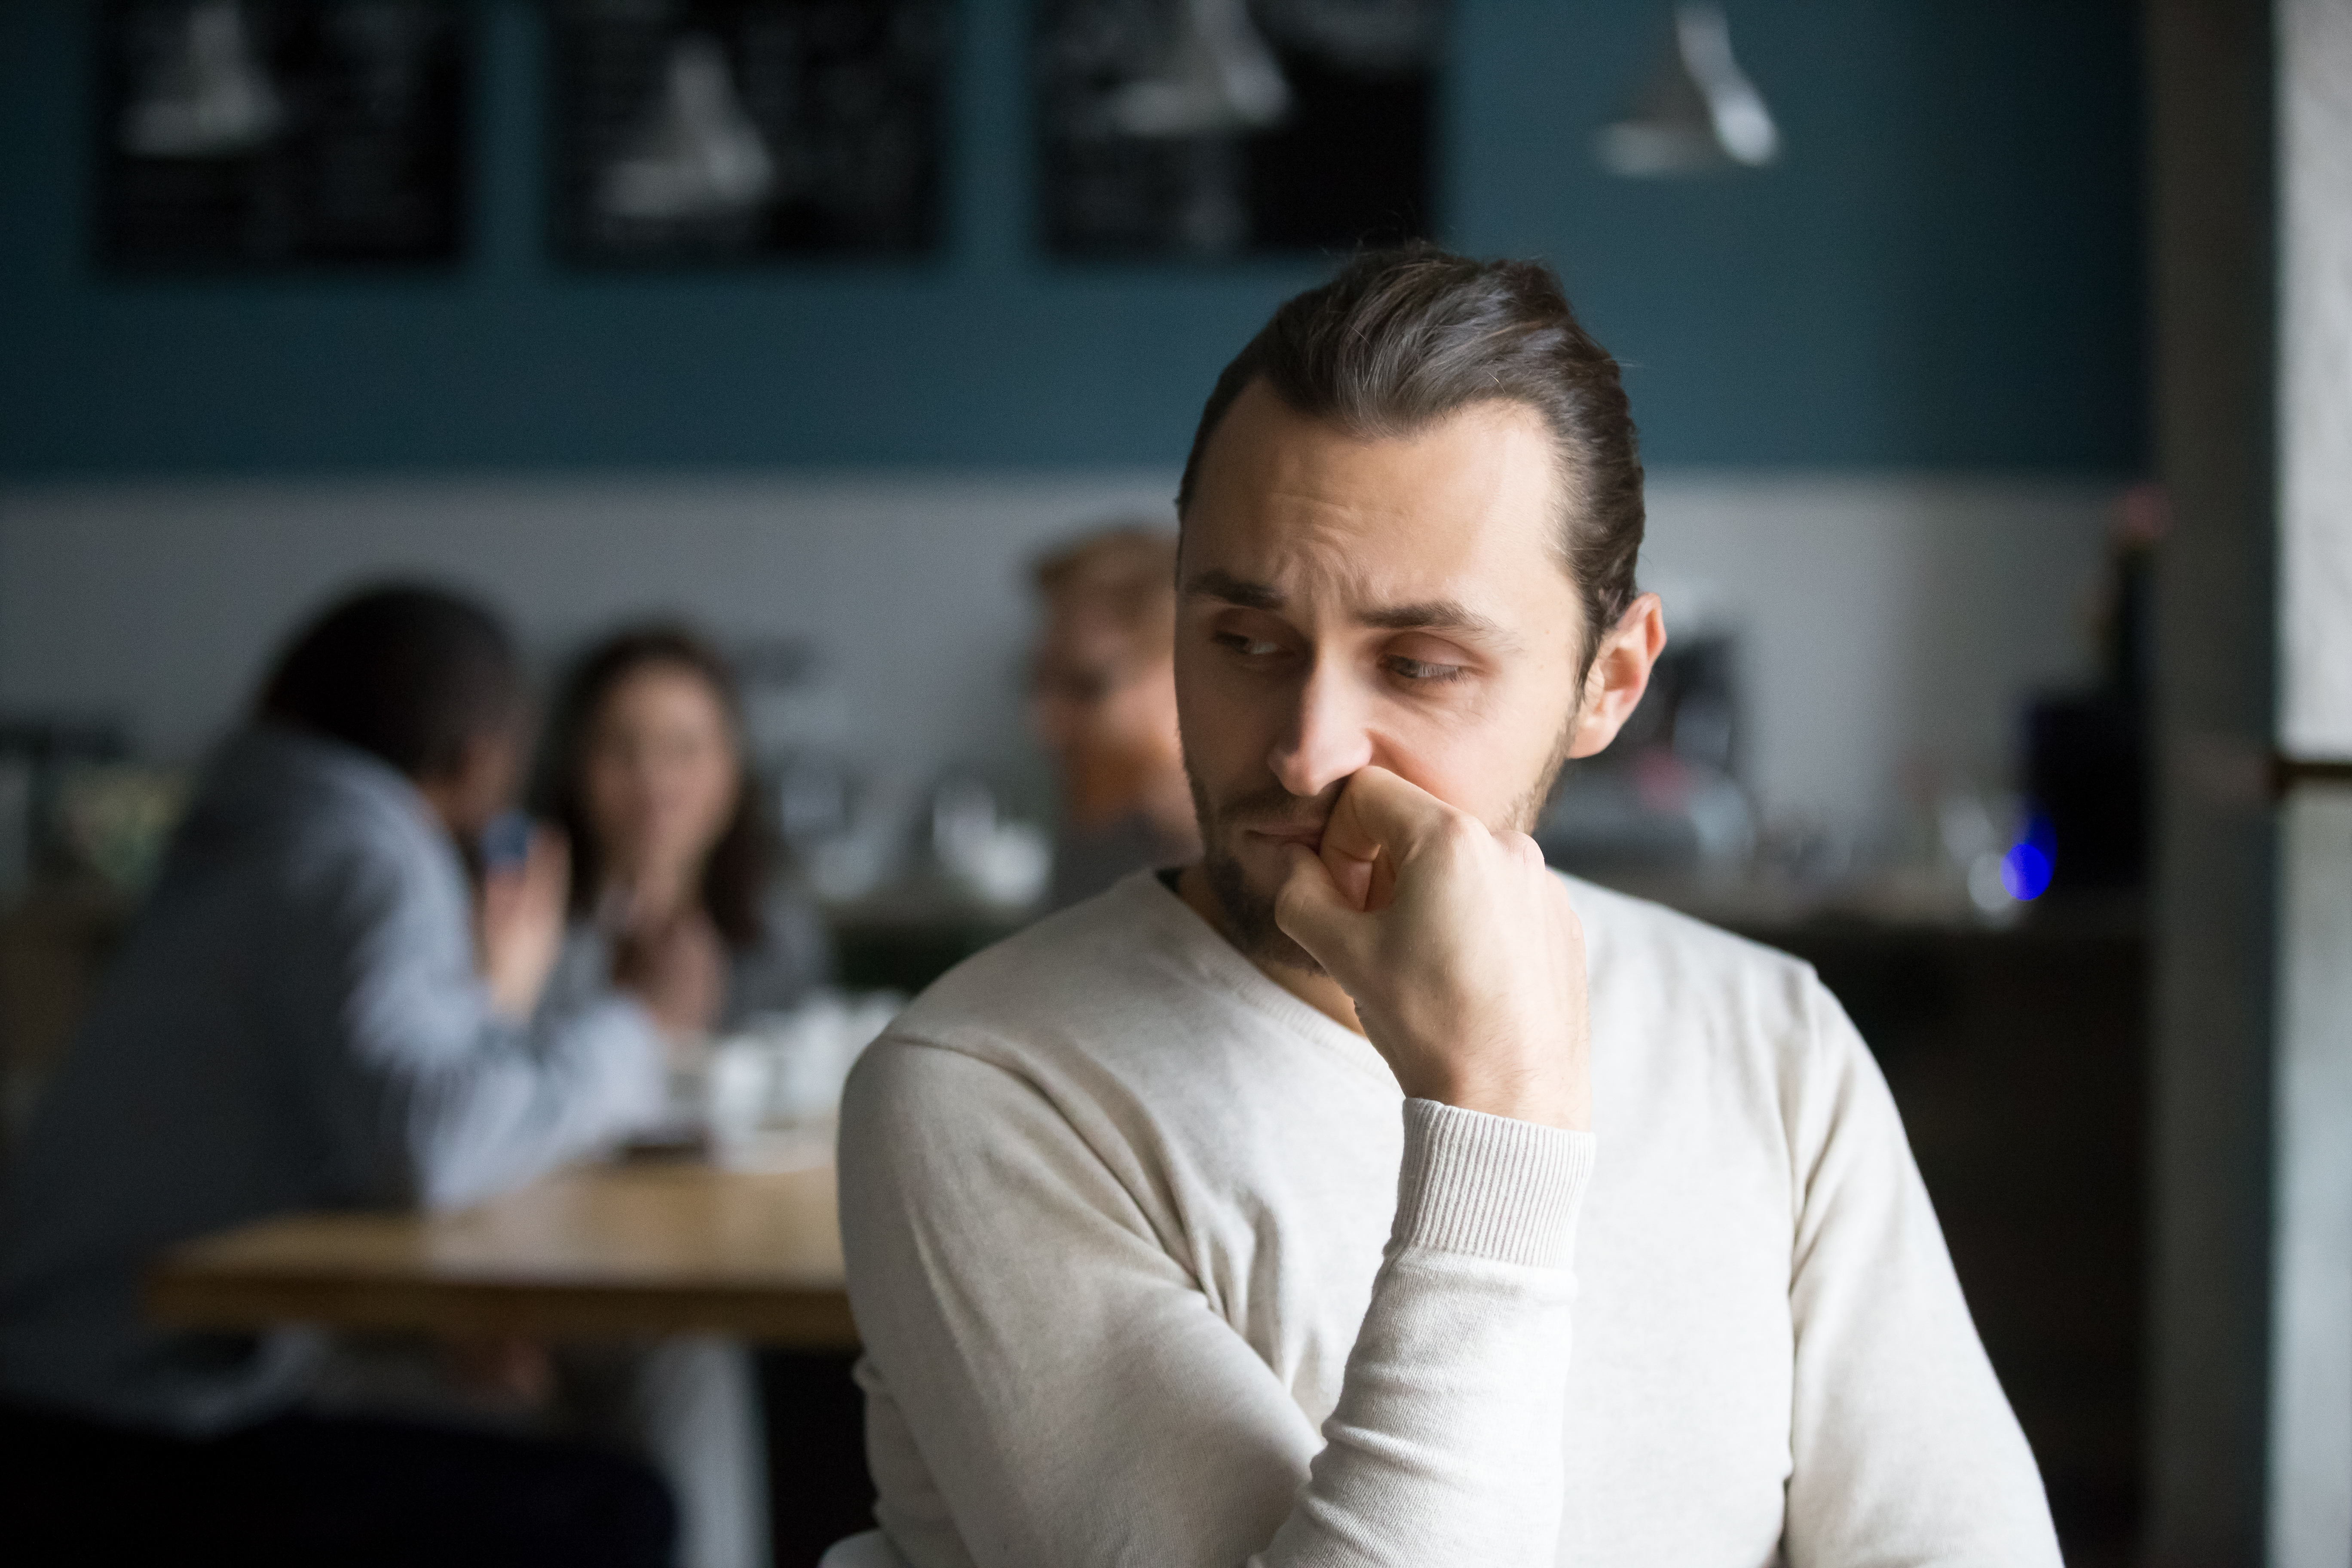 An upset man in a café | Source: Shutterstock